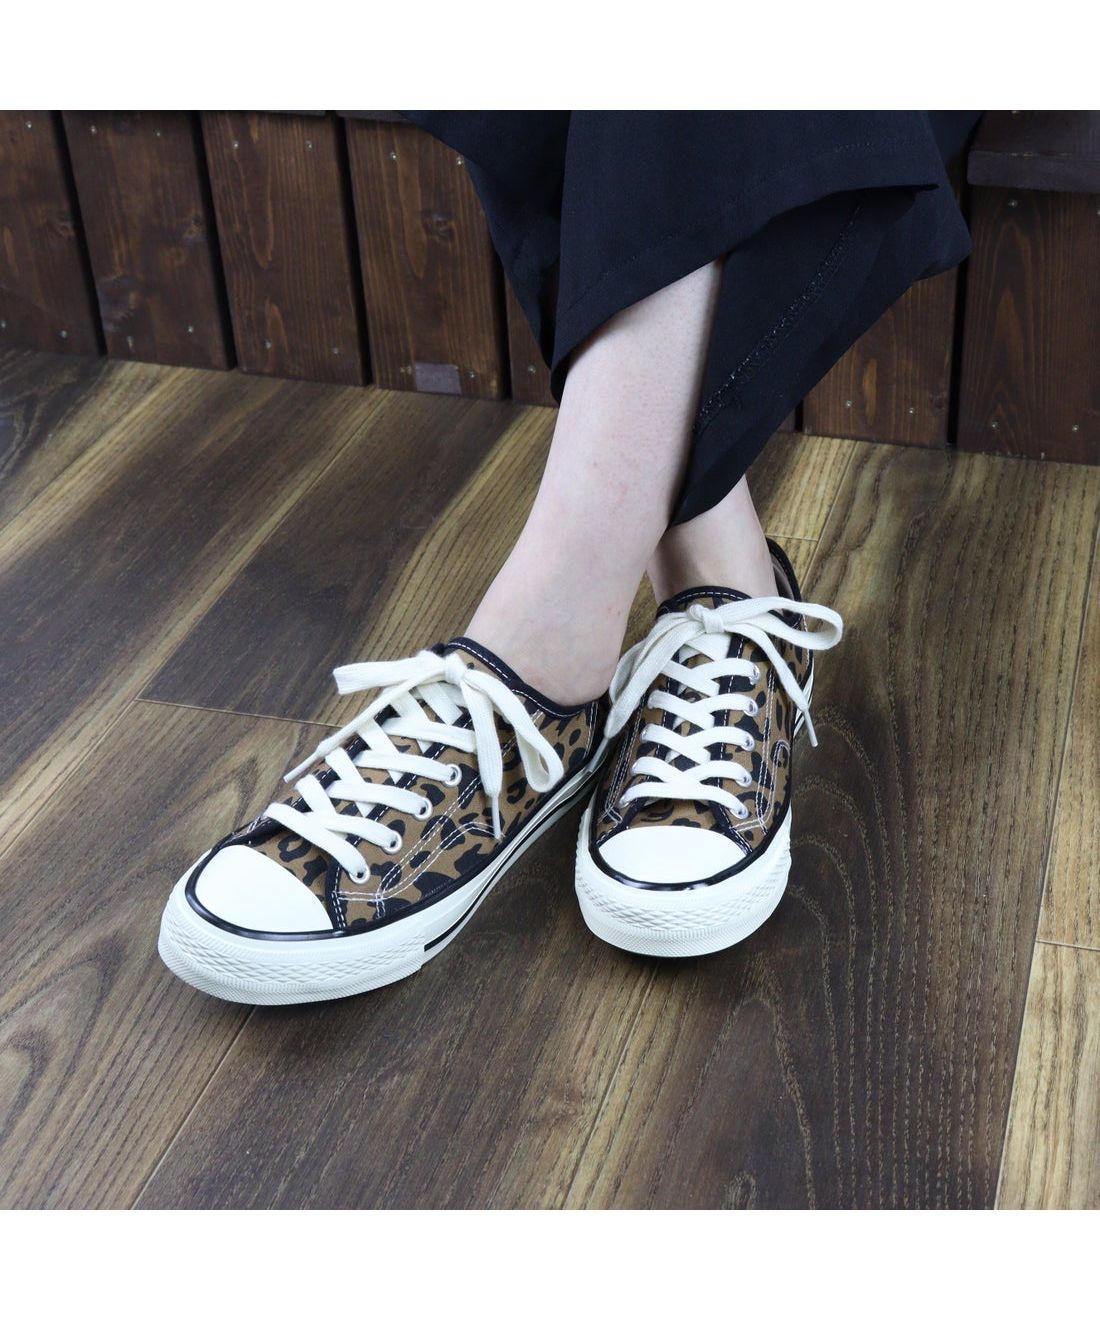 セールソール セットアップ 韓国ファッション ワンピース 靴